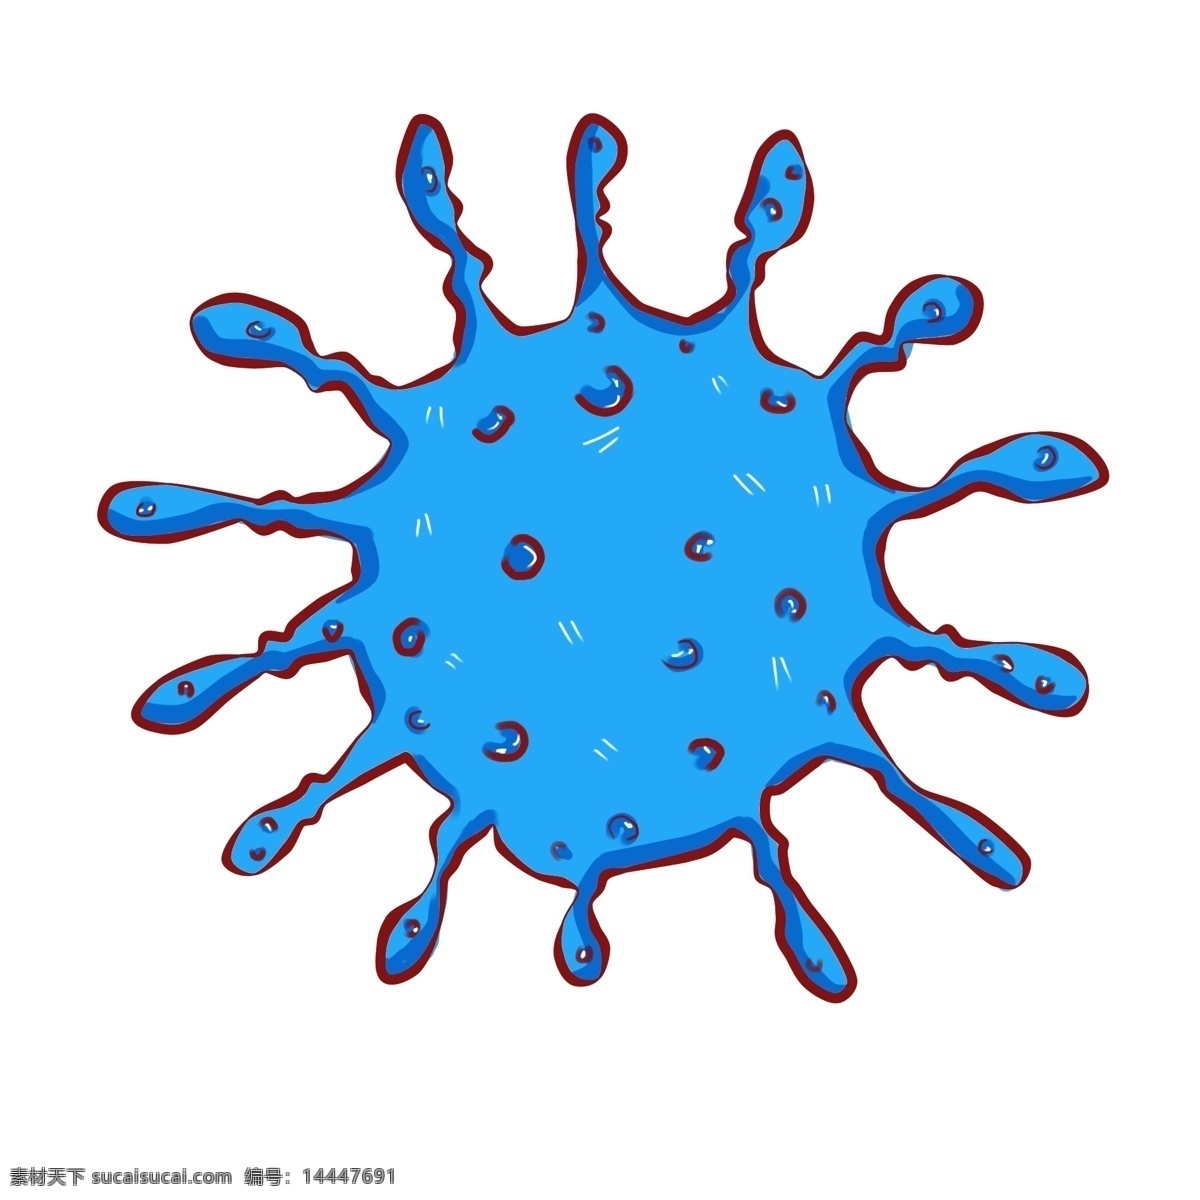 蓝色 圆球 细菌 插画 蓝色的细菌 圆球细菌 蓝色的触须 病菌 生物细菌 卡通细菌插画 蓝色球菌